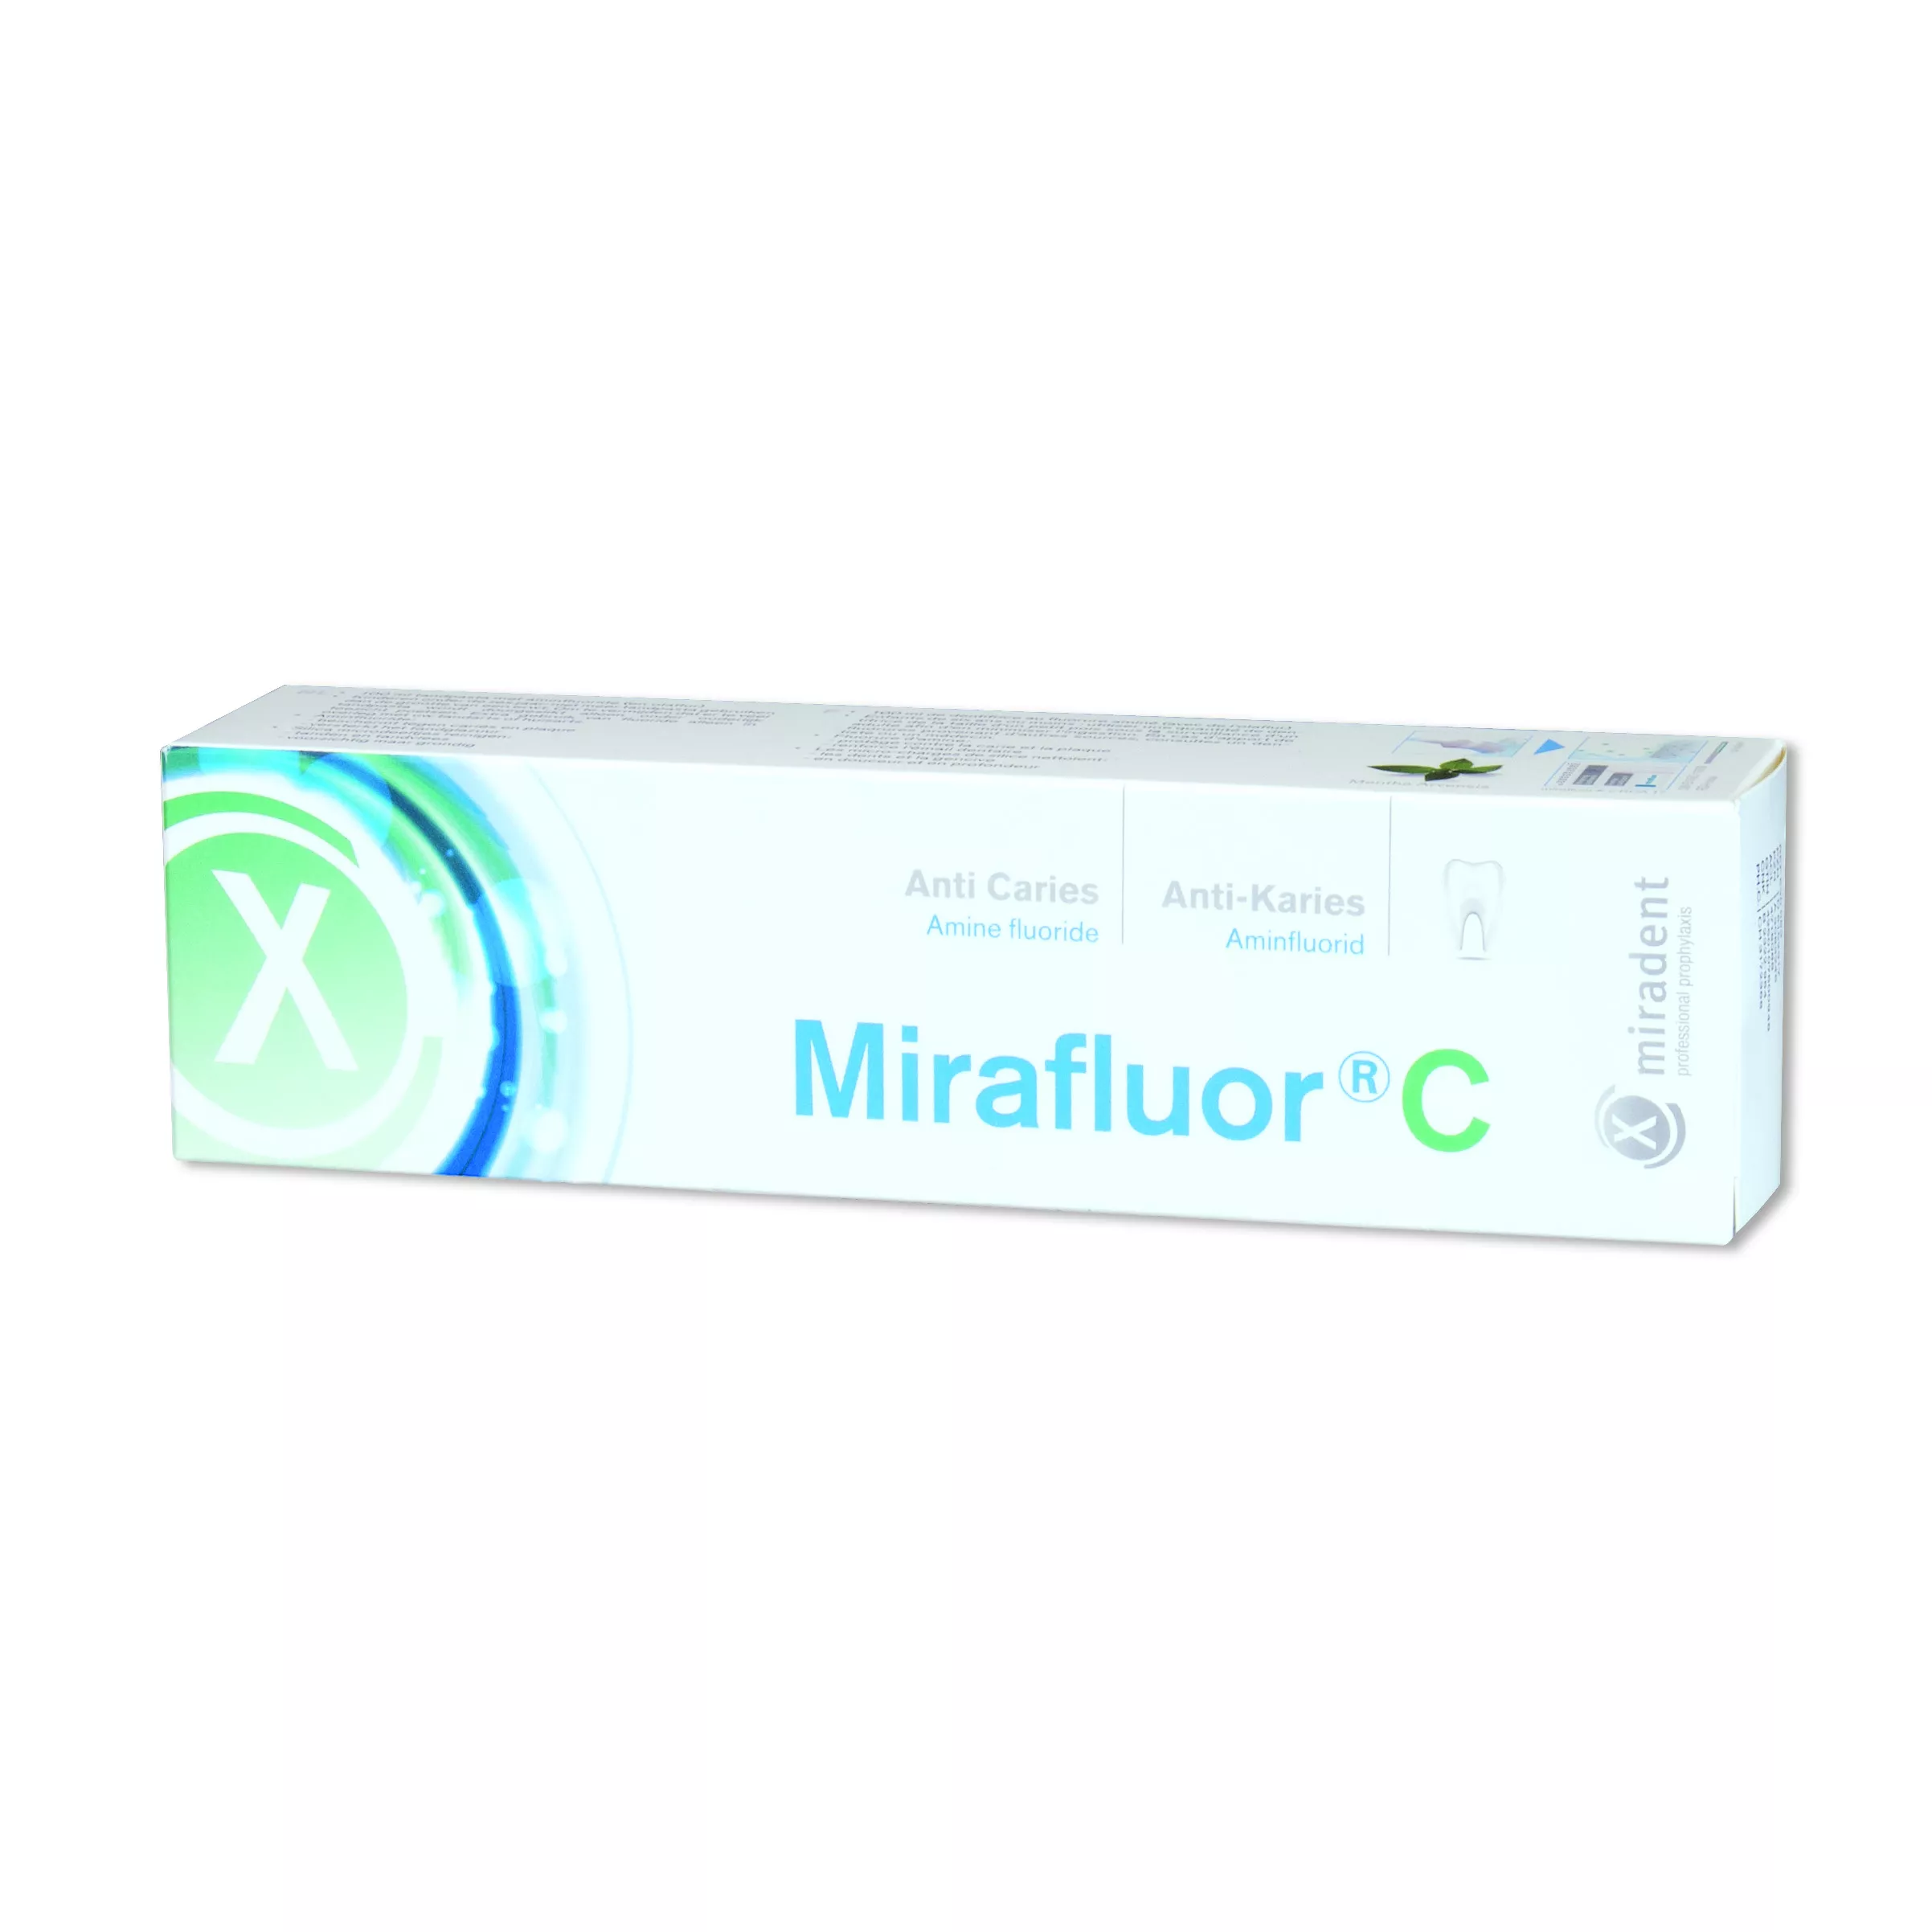 Зубная паста с аминофторидом. Mirafluor зубная паста. Mirafluor c зубная паста. Зубная паста Vivax реминерализующая. Mirafluor c 3+ зубная паста.